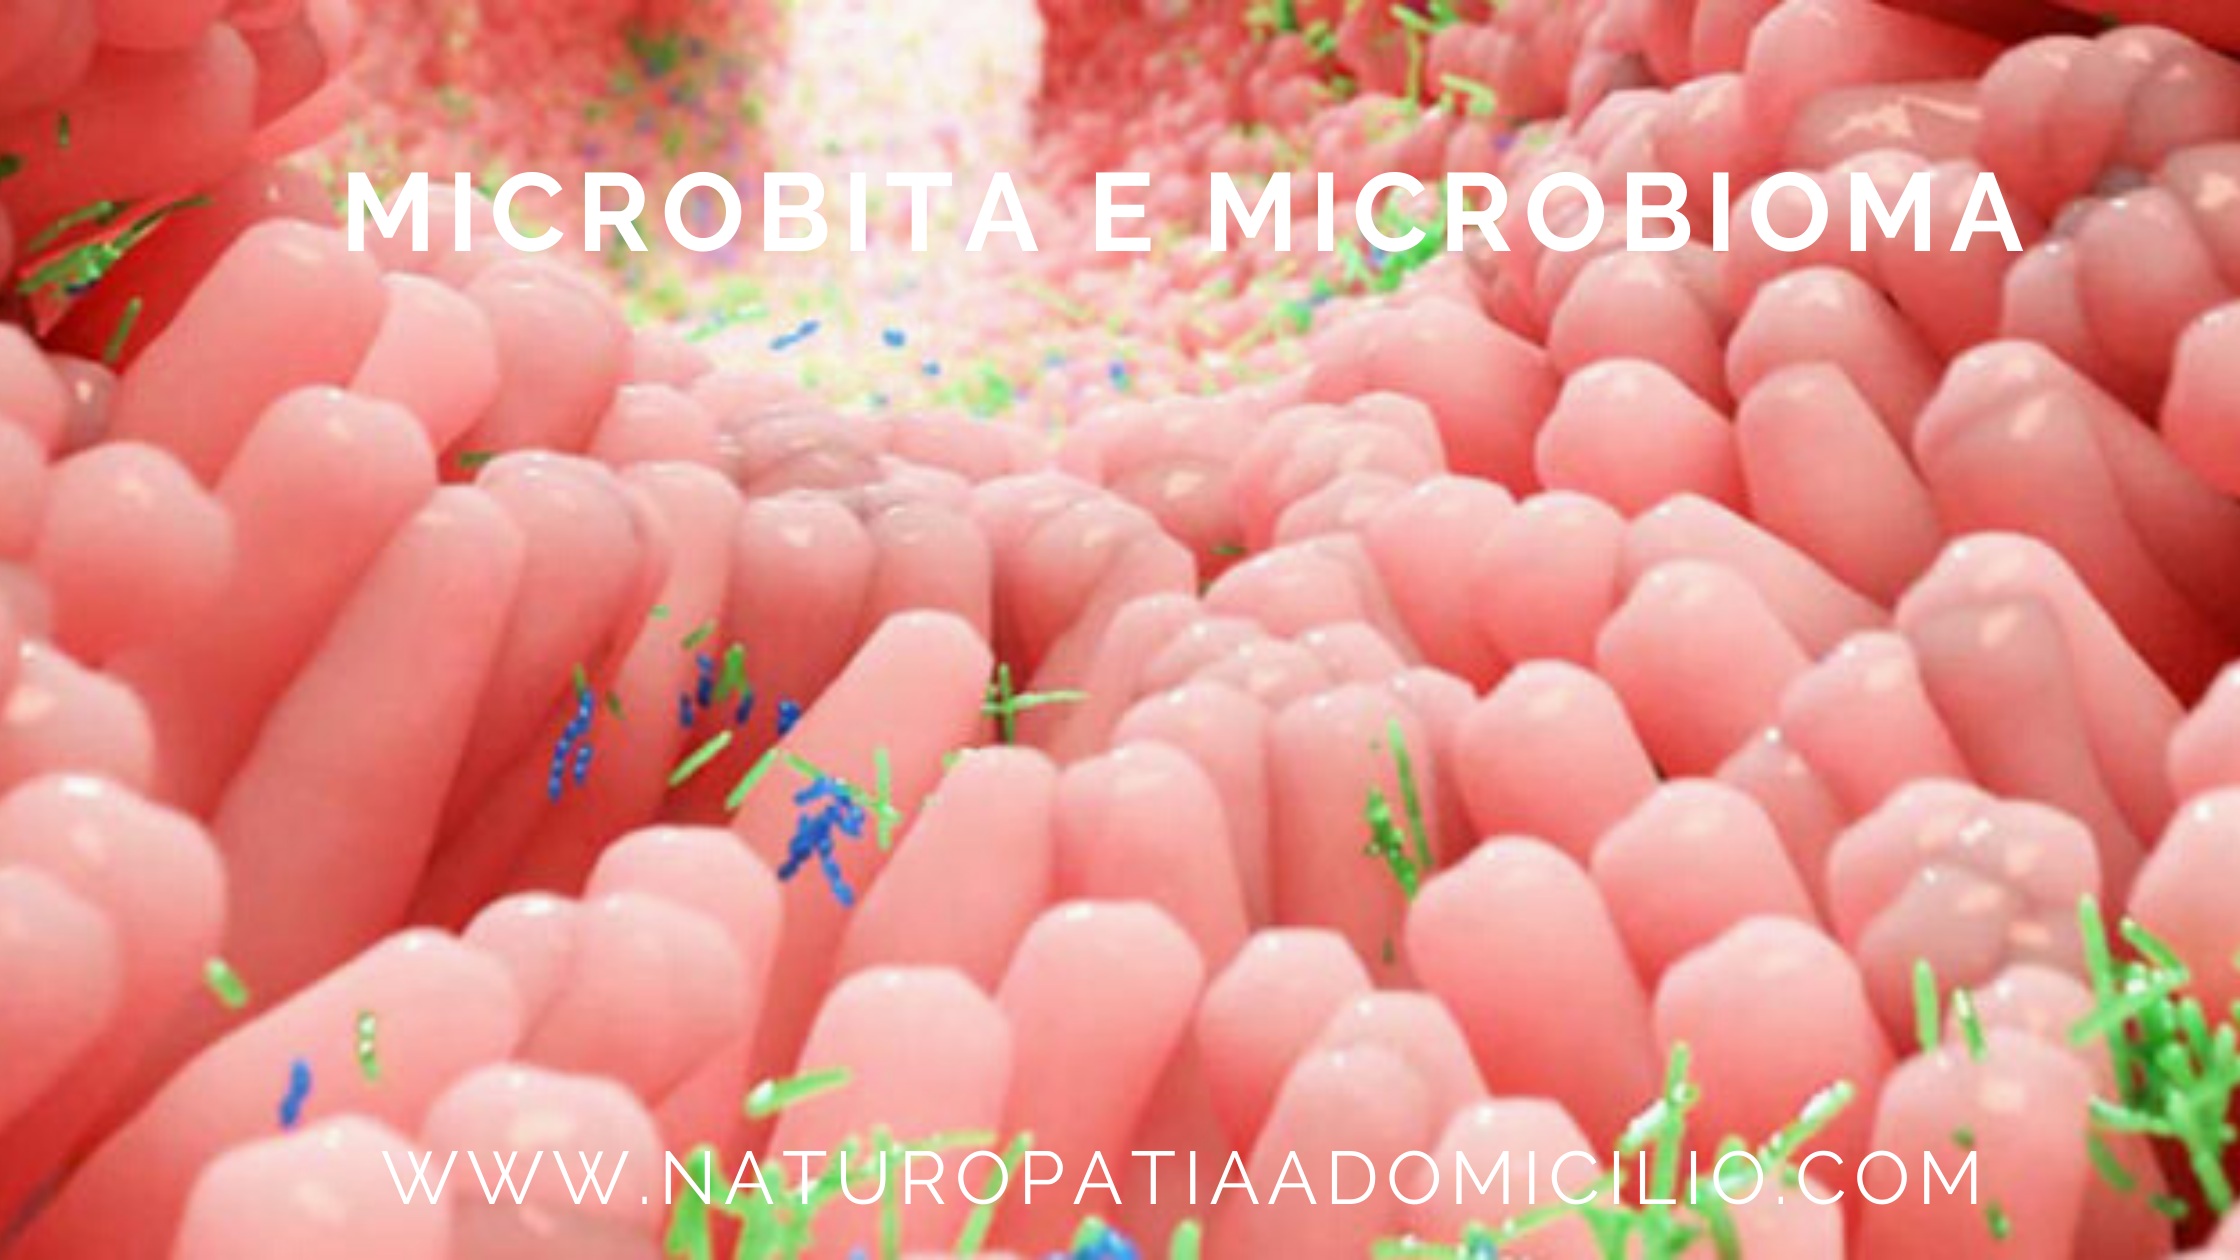 Microbiota E Microbioma: Riflessione Sullo Stile Di Vita Di Oggi